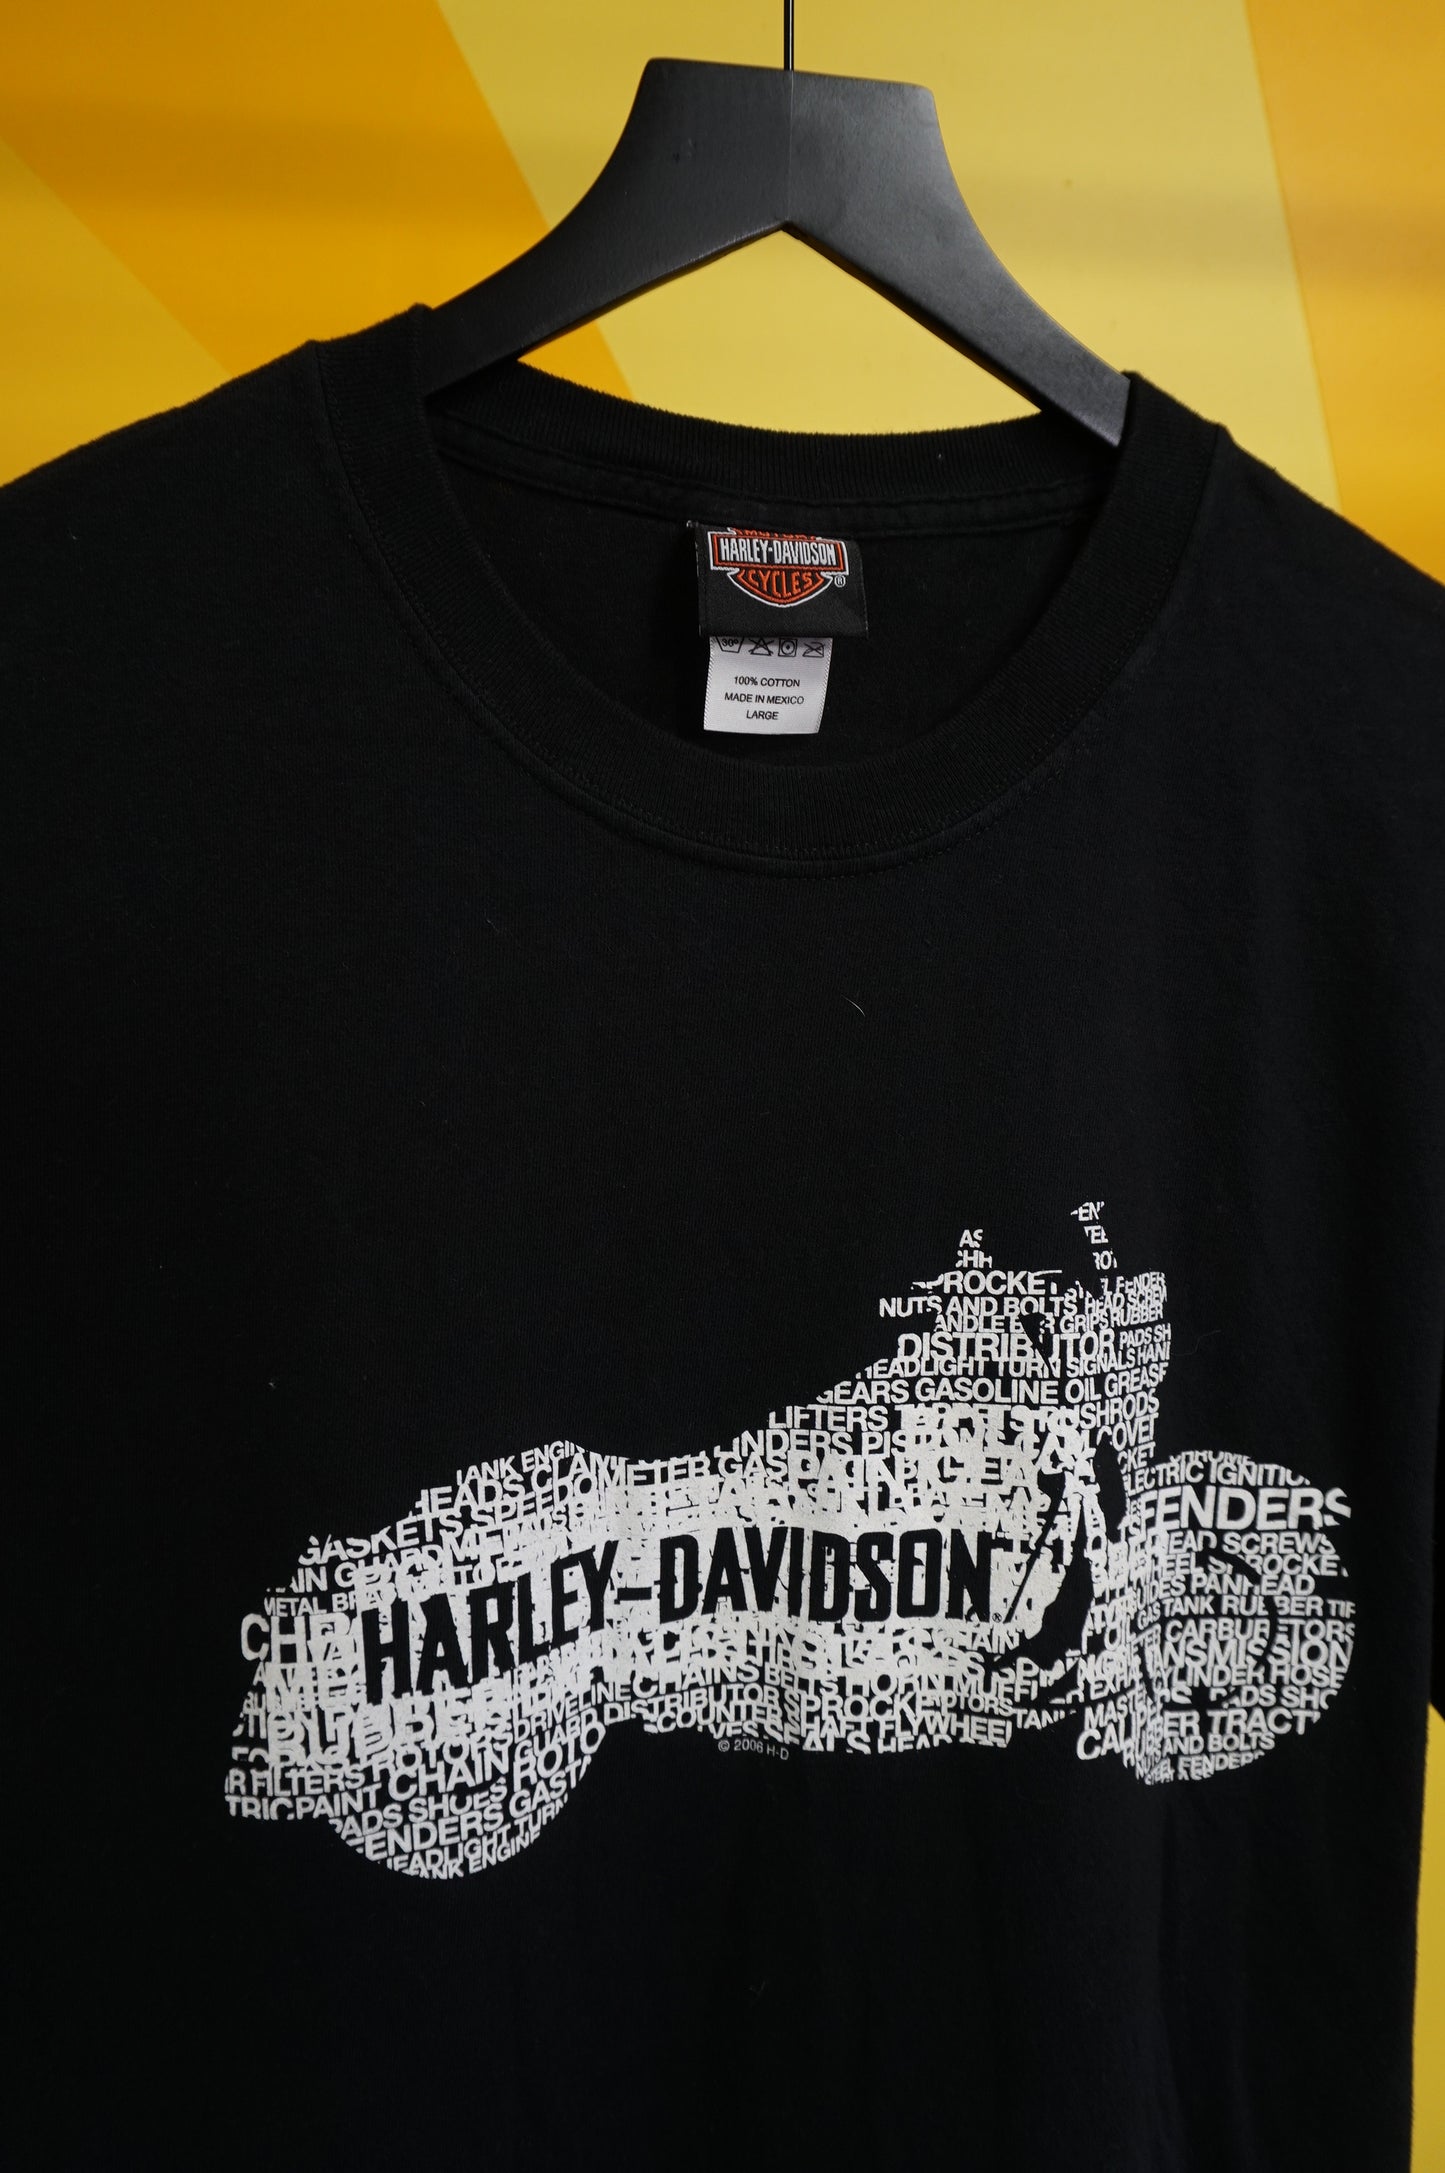 (M/L) 2006 Waco Harley Davidson T-Shirt